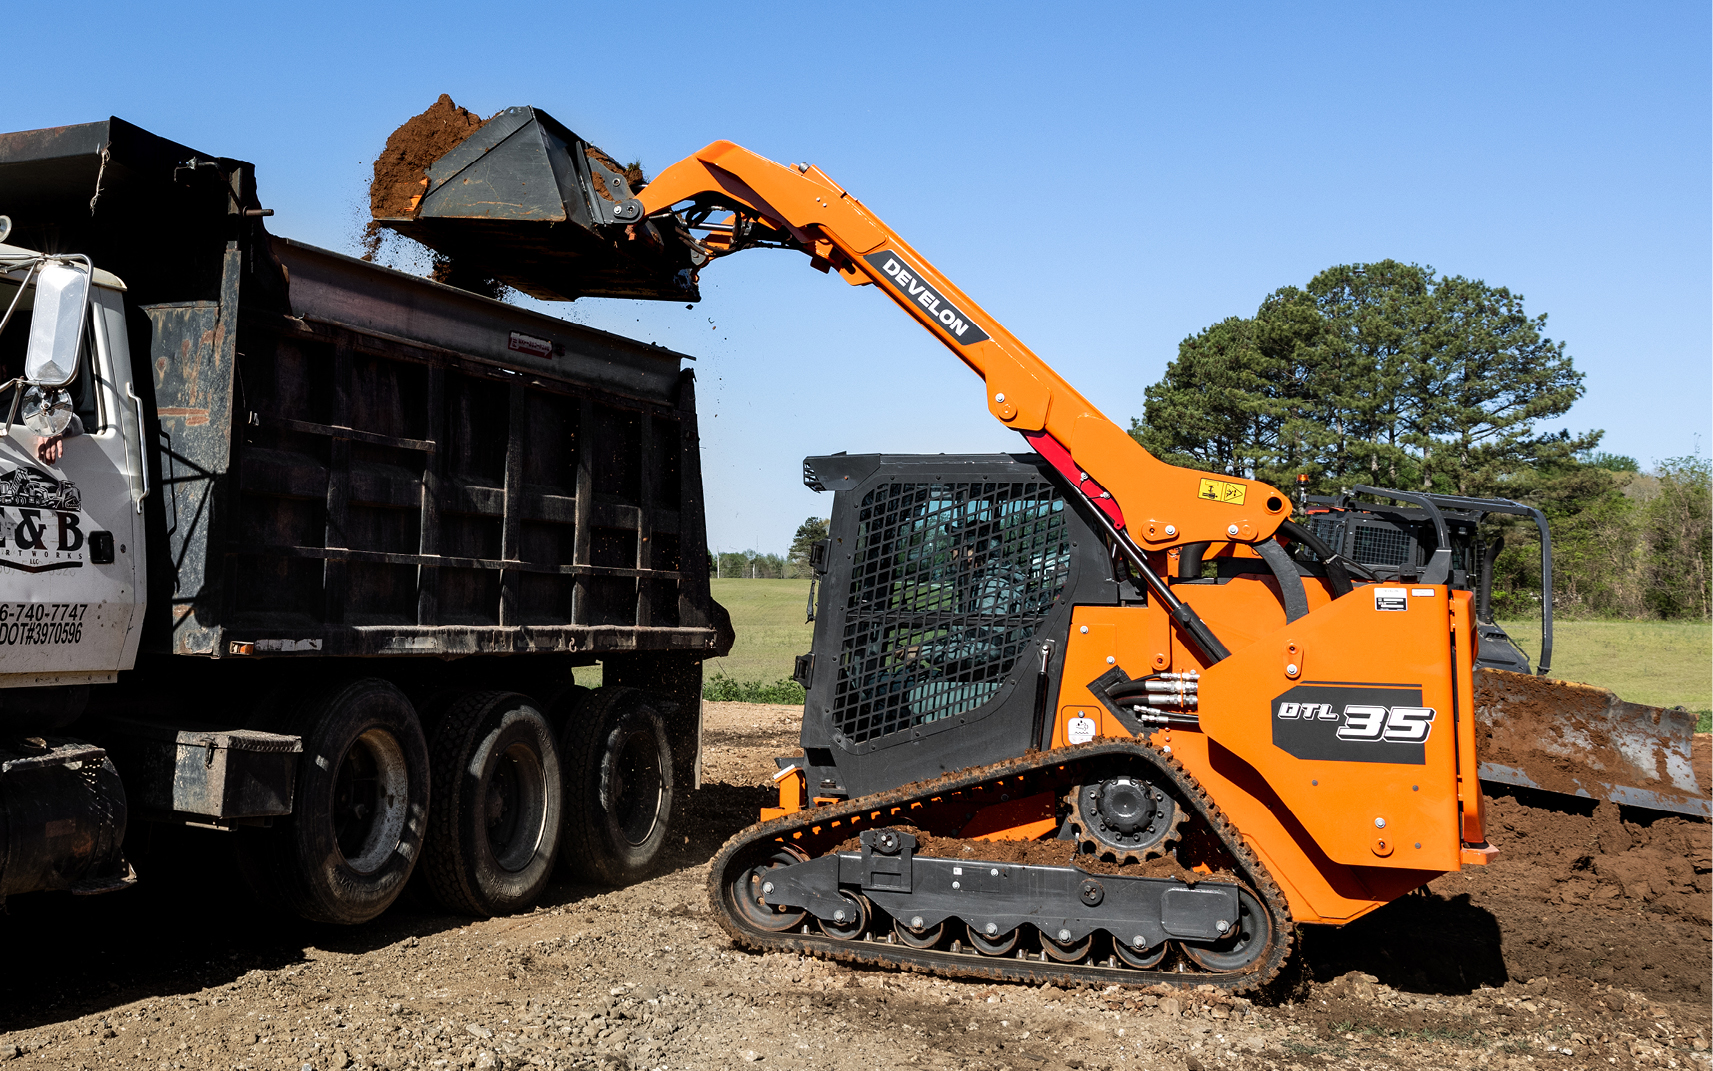 A DEVELON DTL35 compact track loader unloads dirt into a dump truck.